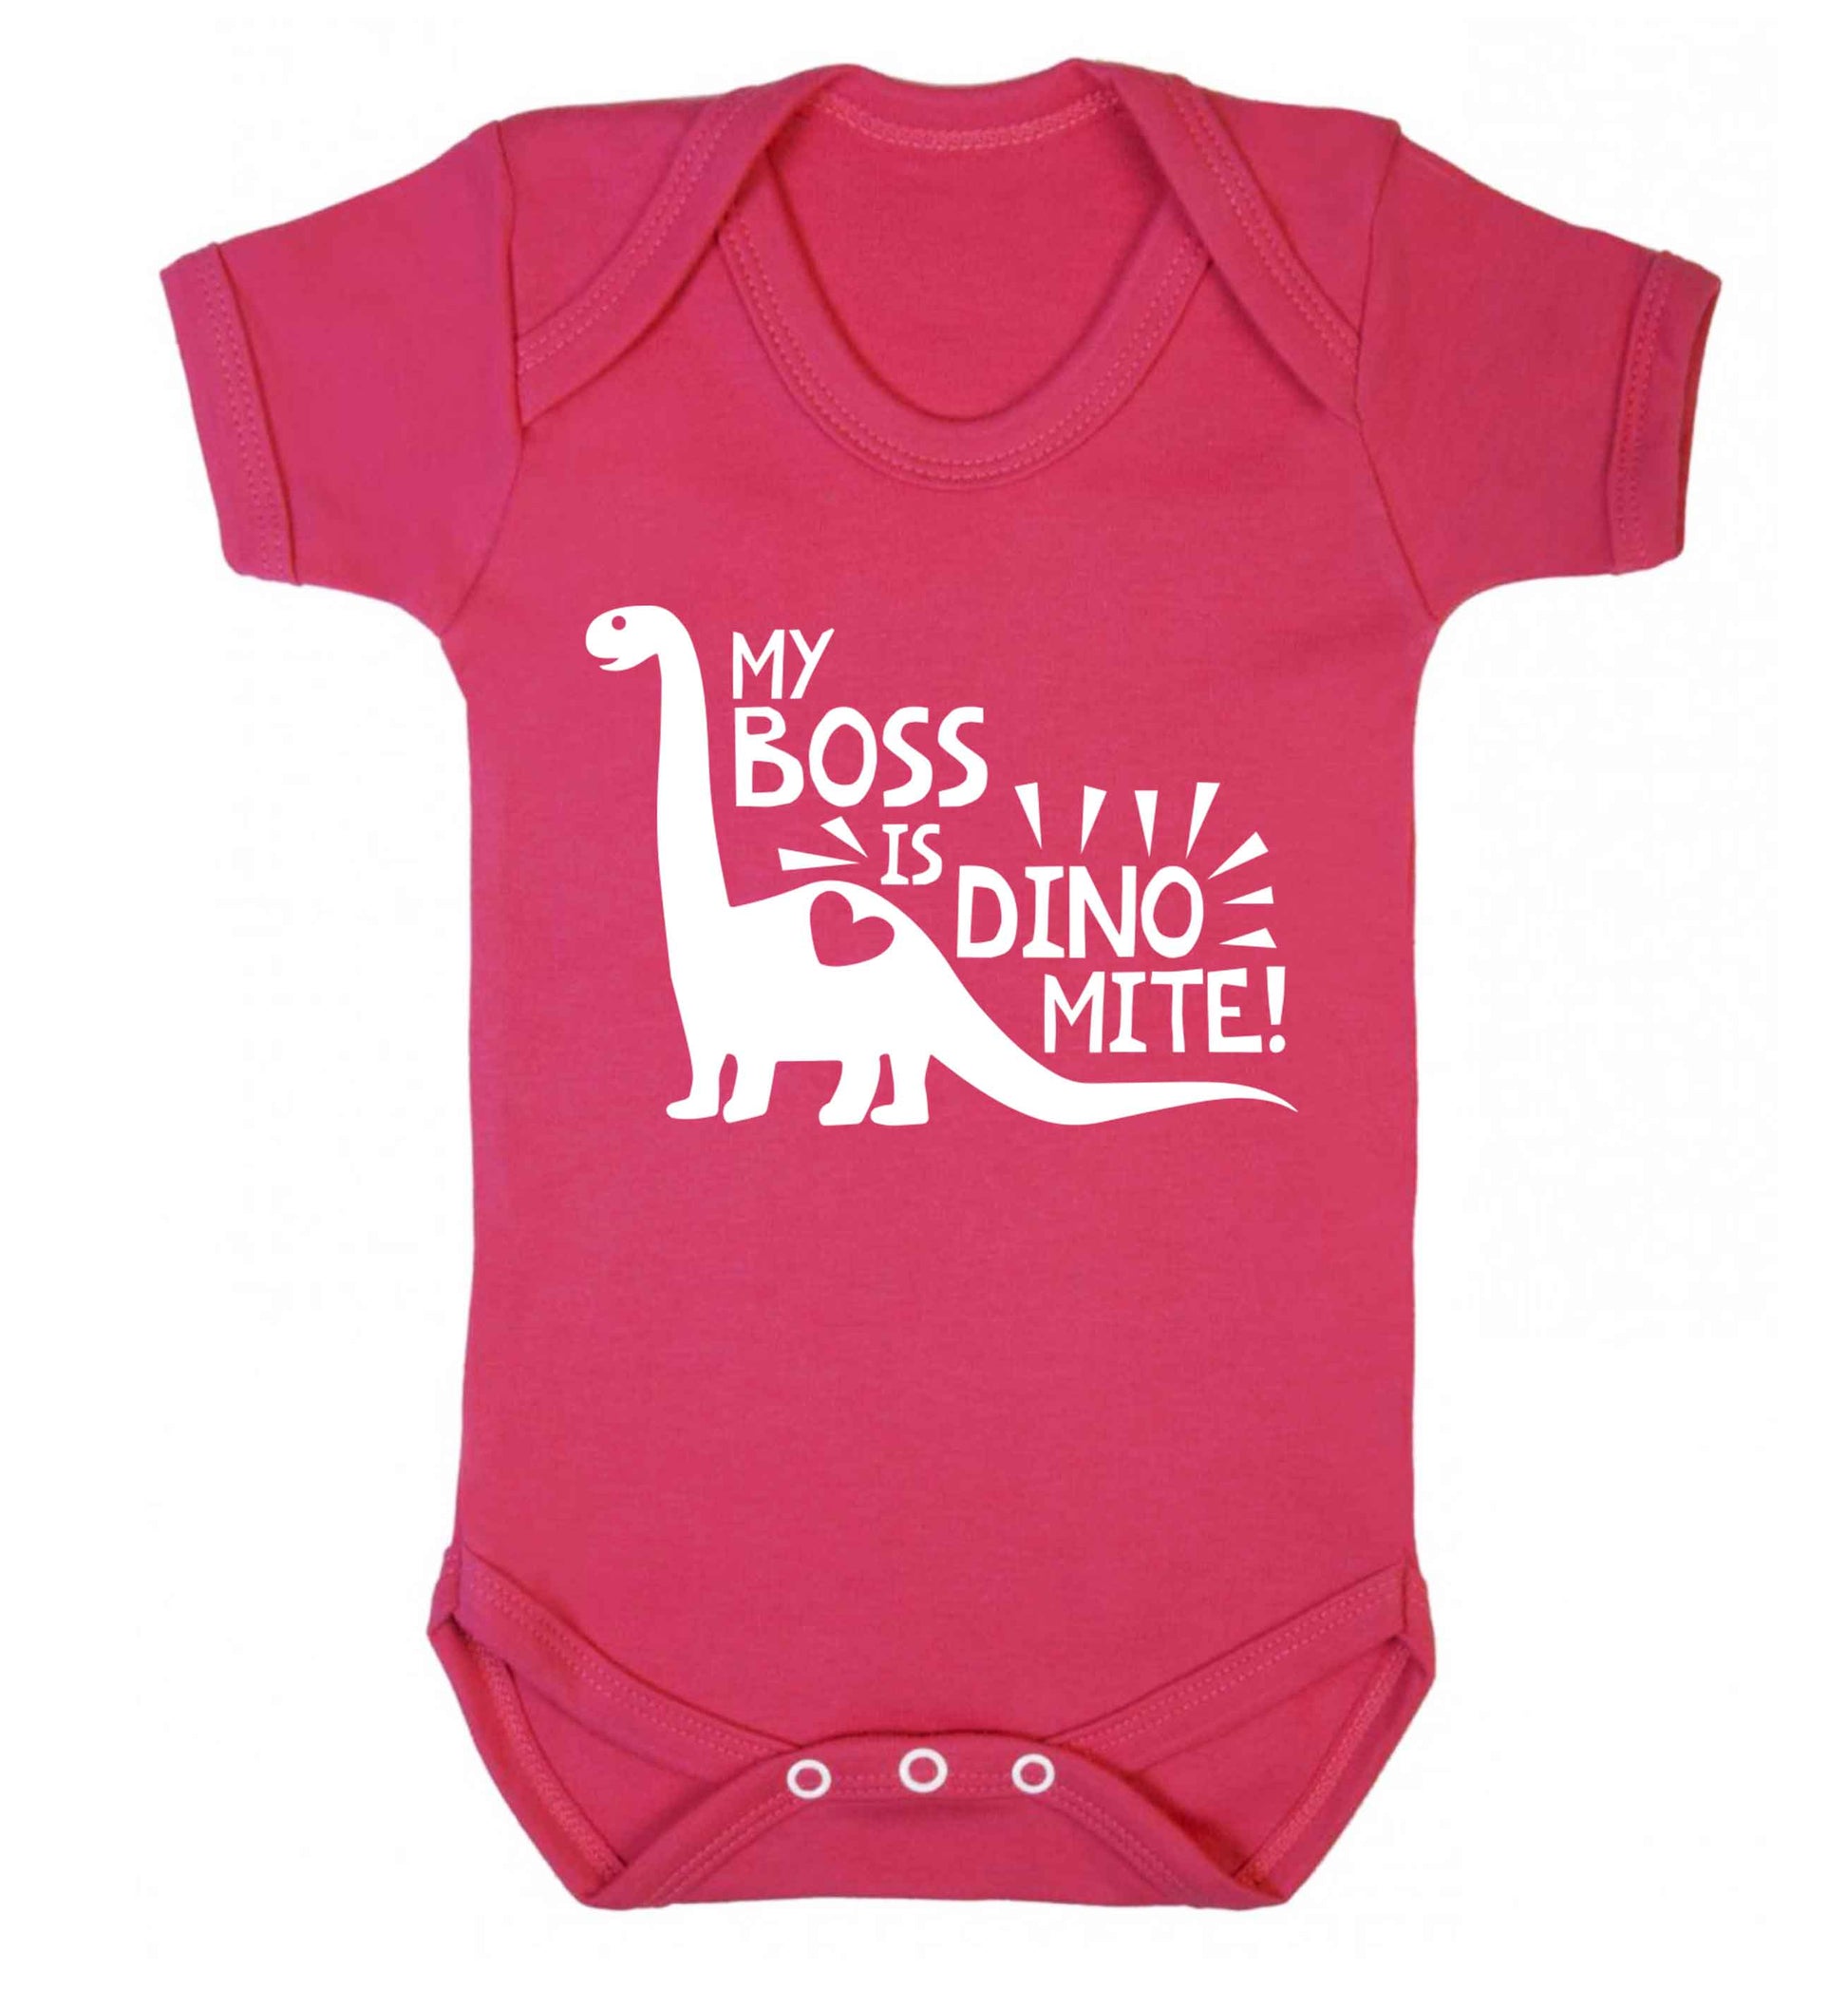 My boss is dinomite! Baby Vest dark pink 18-24 months